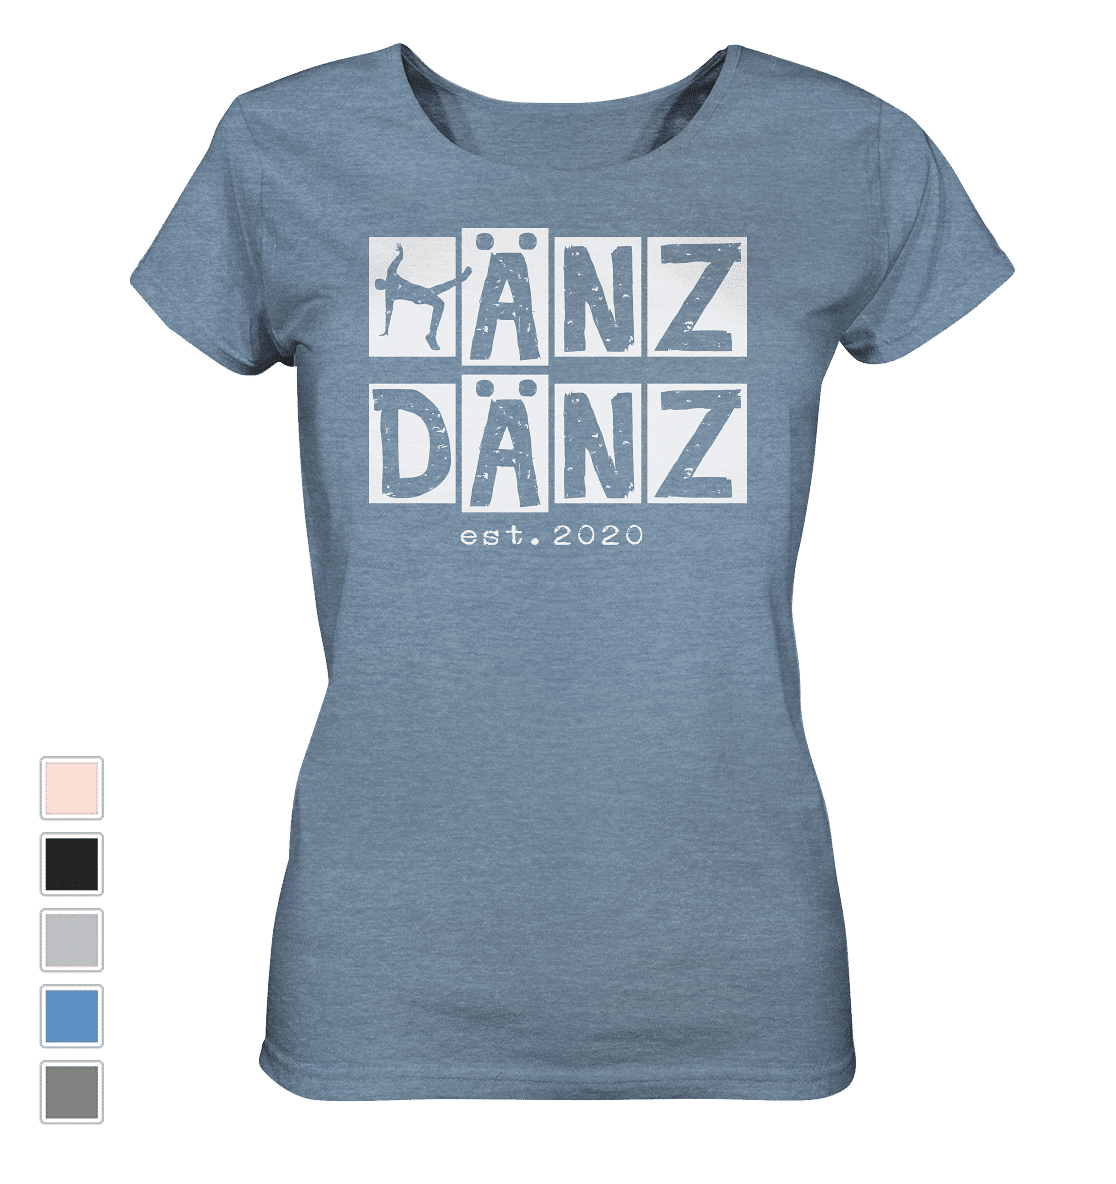 #DÄNZer | Frauen Bio T-Shirt (meliert) - Produktbild